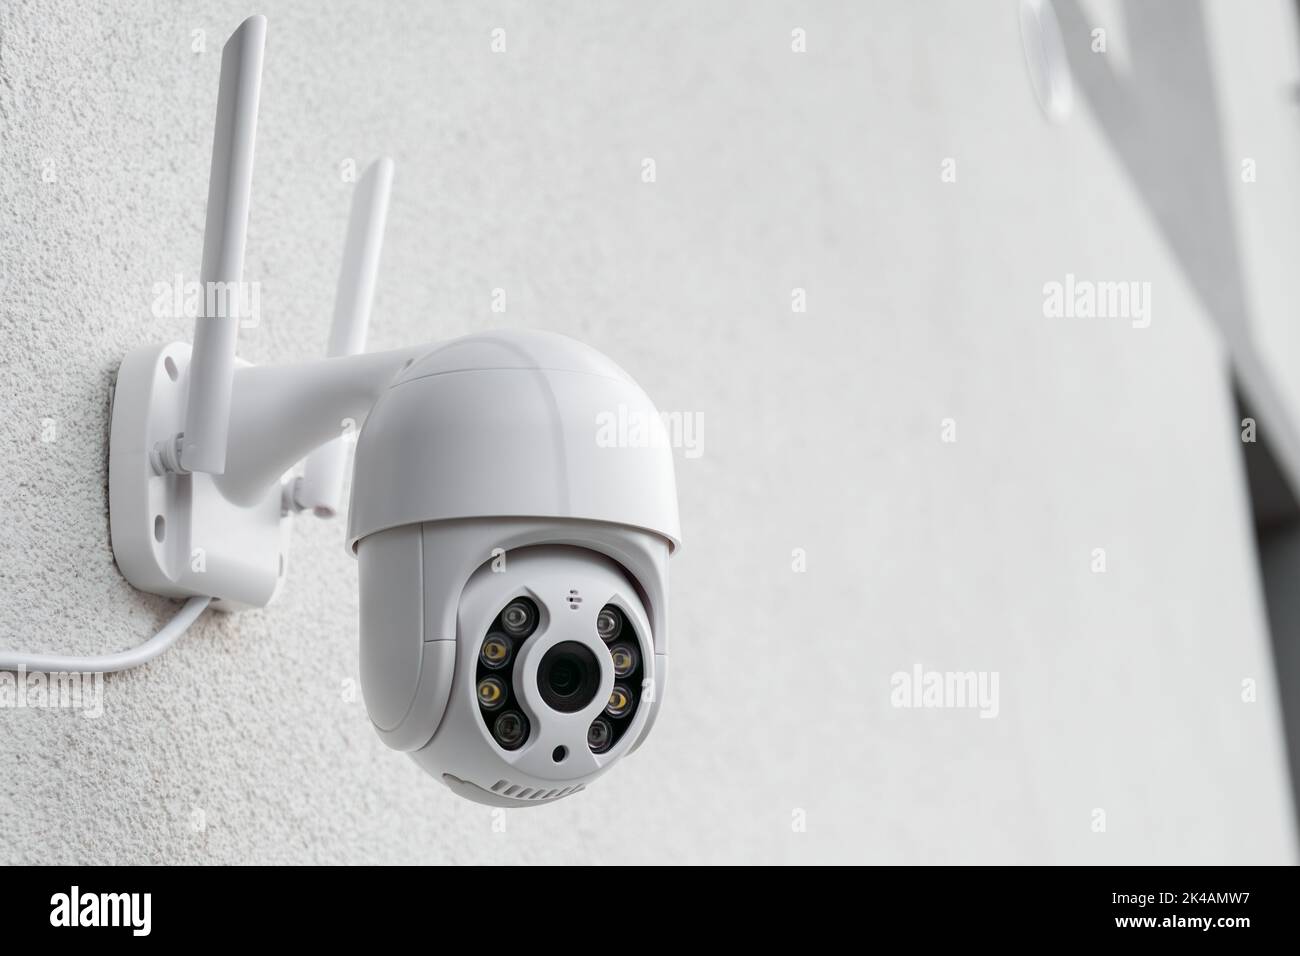 Caméra CCTV ronde avec antennes pour filmer des vidéos sur le mur blanc.  Équipement numérique permettant d'enregistrer et de diffuser des vidéos en  temps réel Photo Stock - Alamy